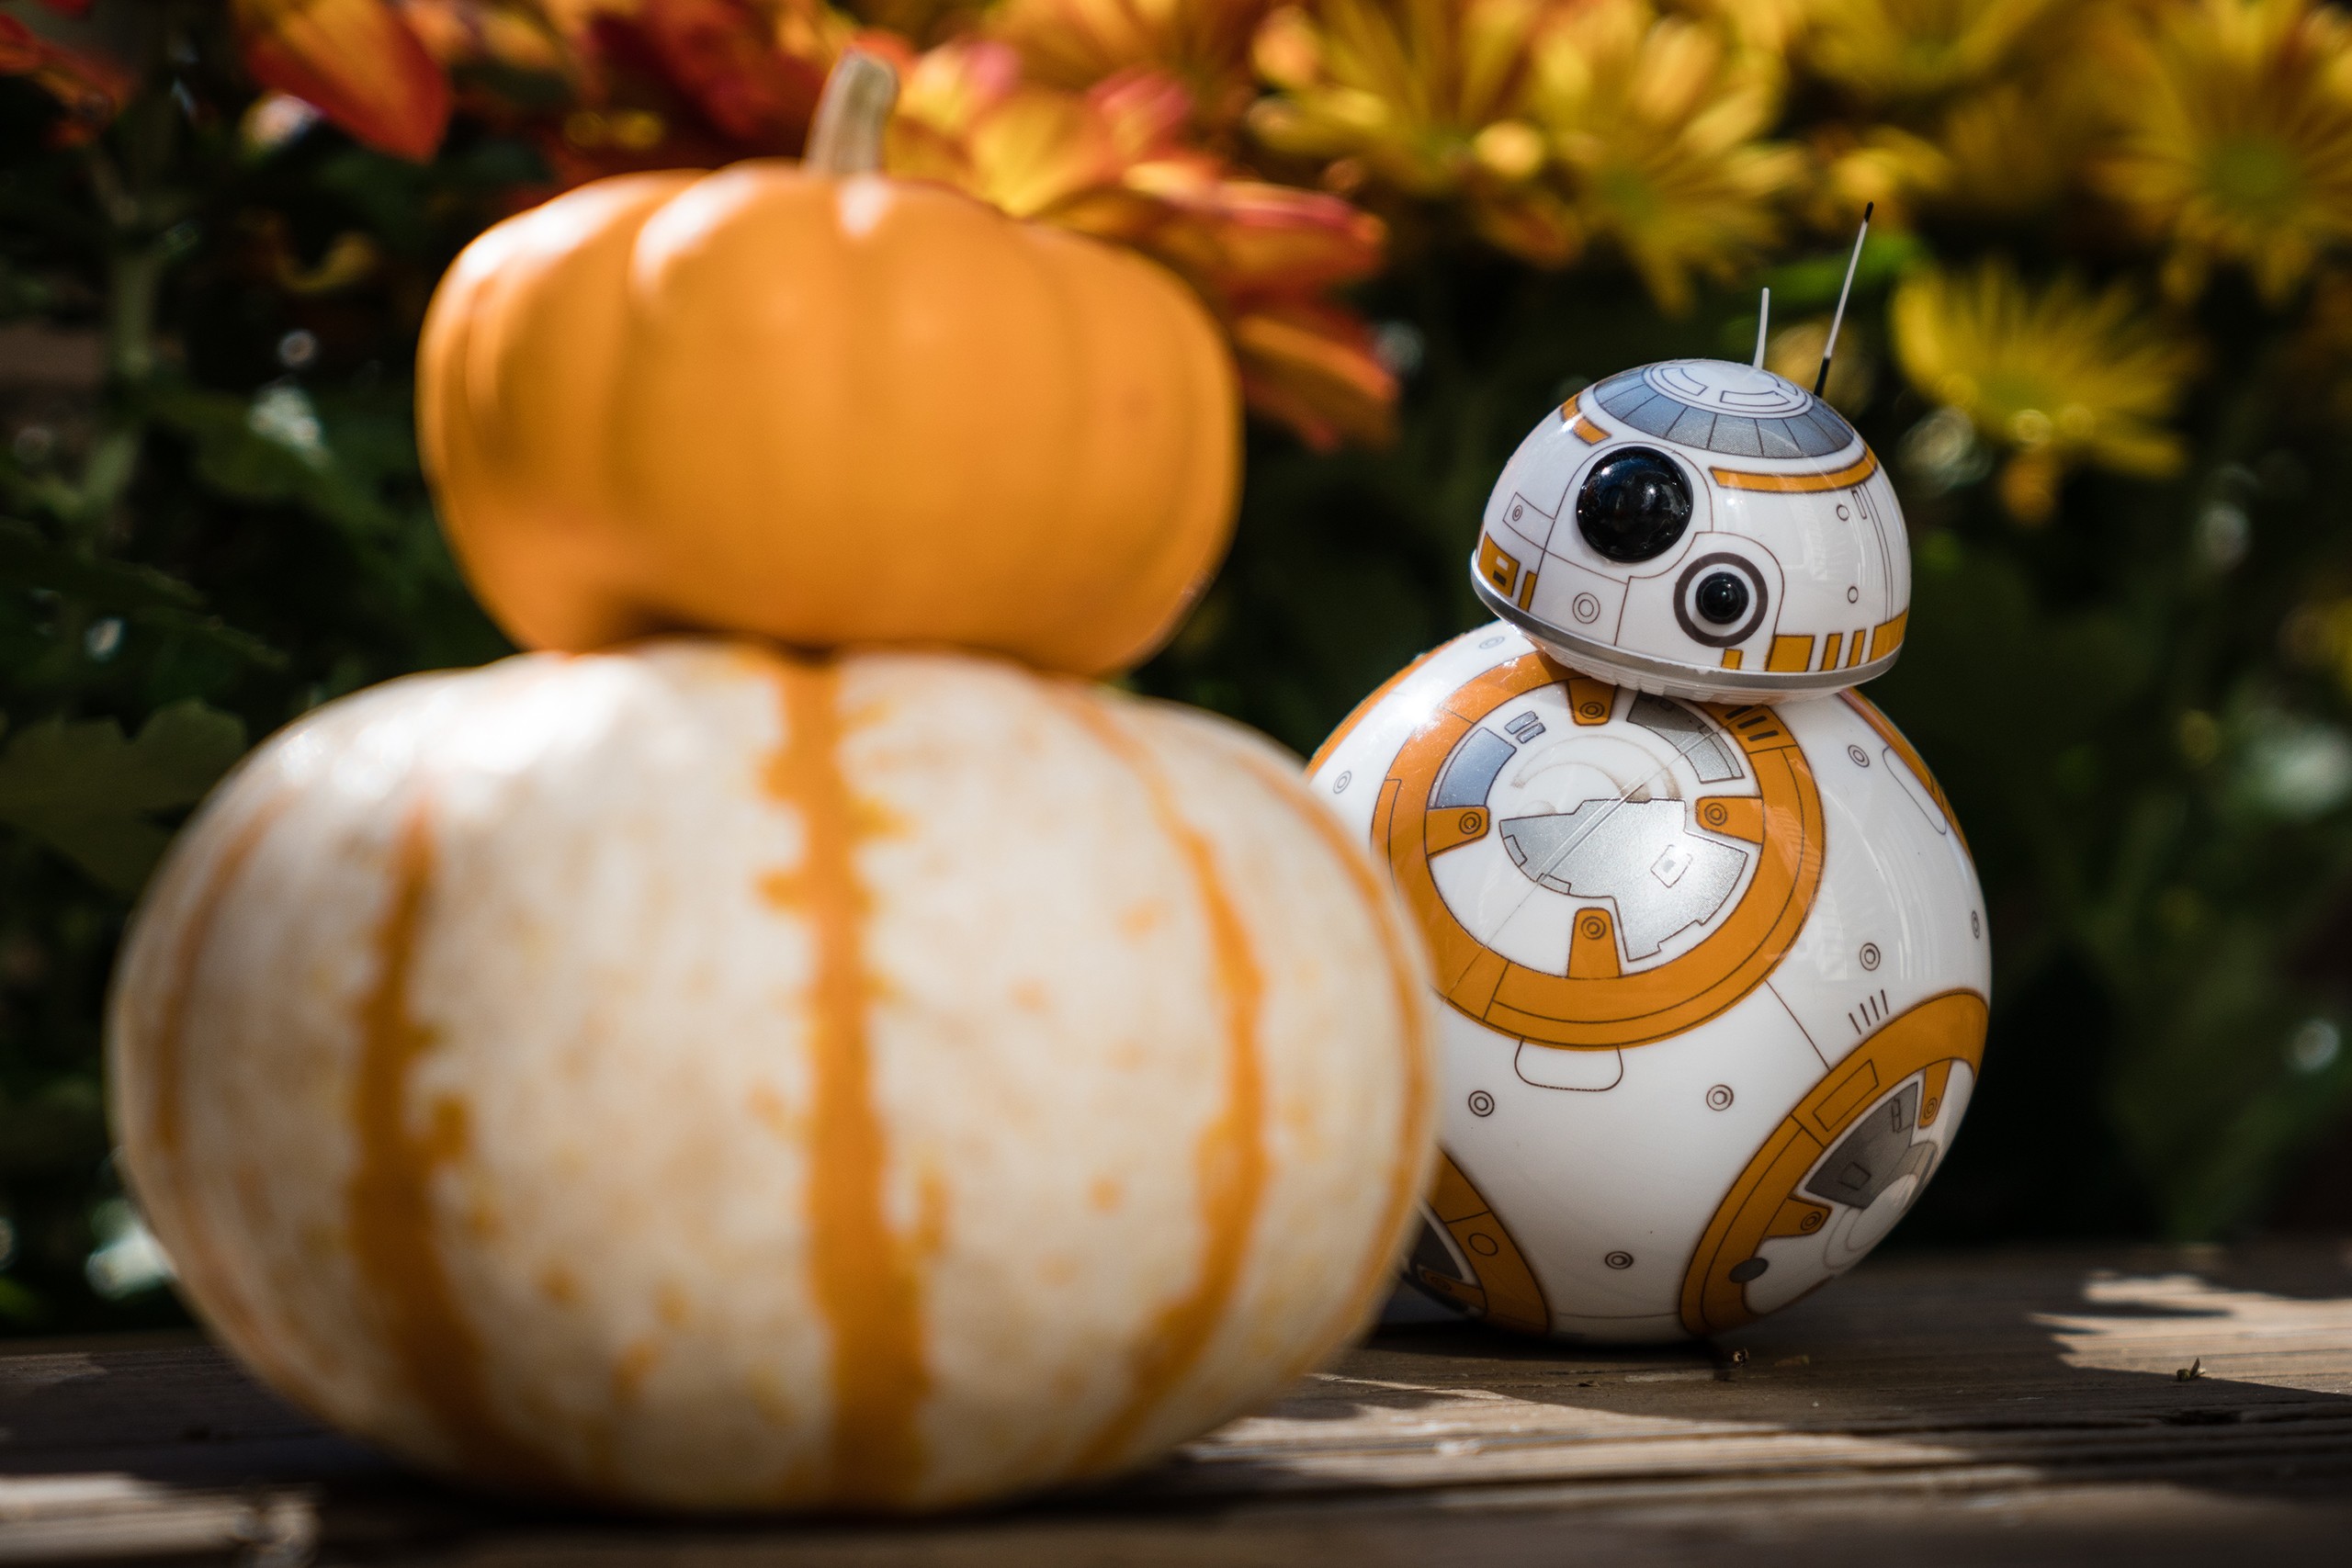 General 2560x1707 Star Wars drone BB-8 pumpkin humor digital art